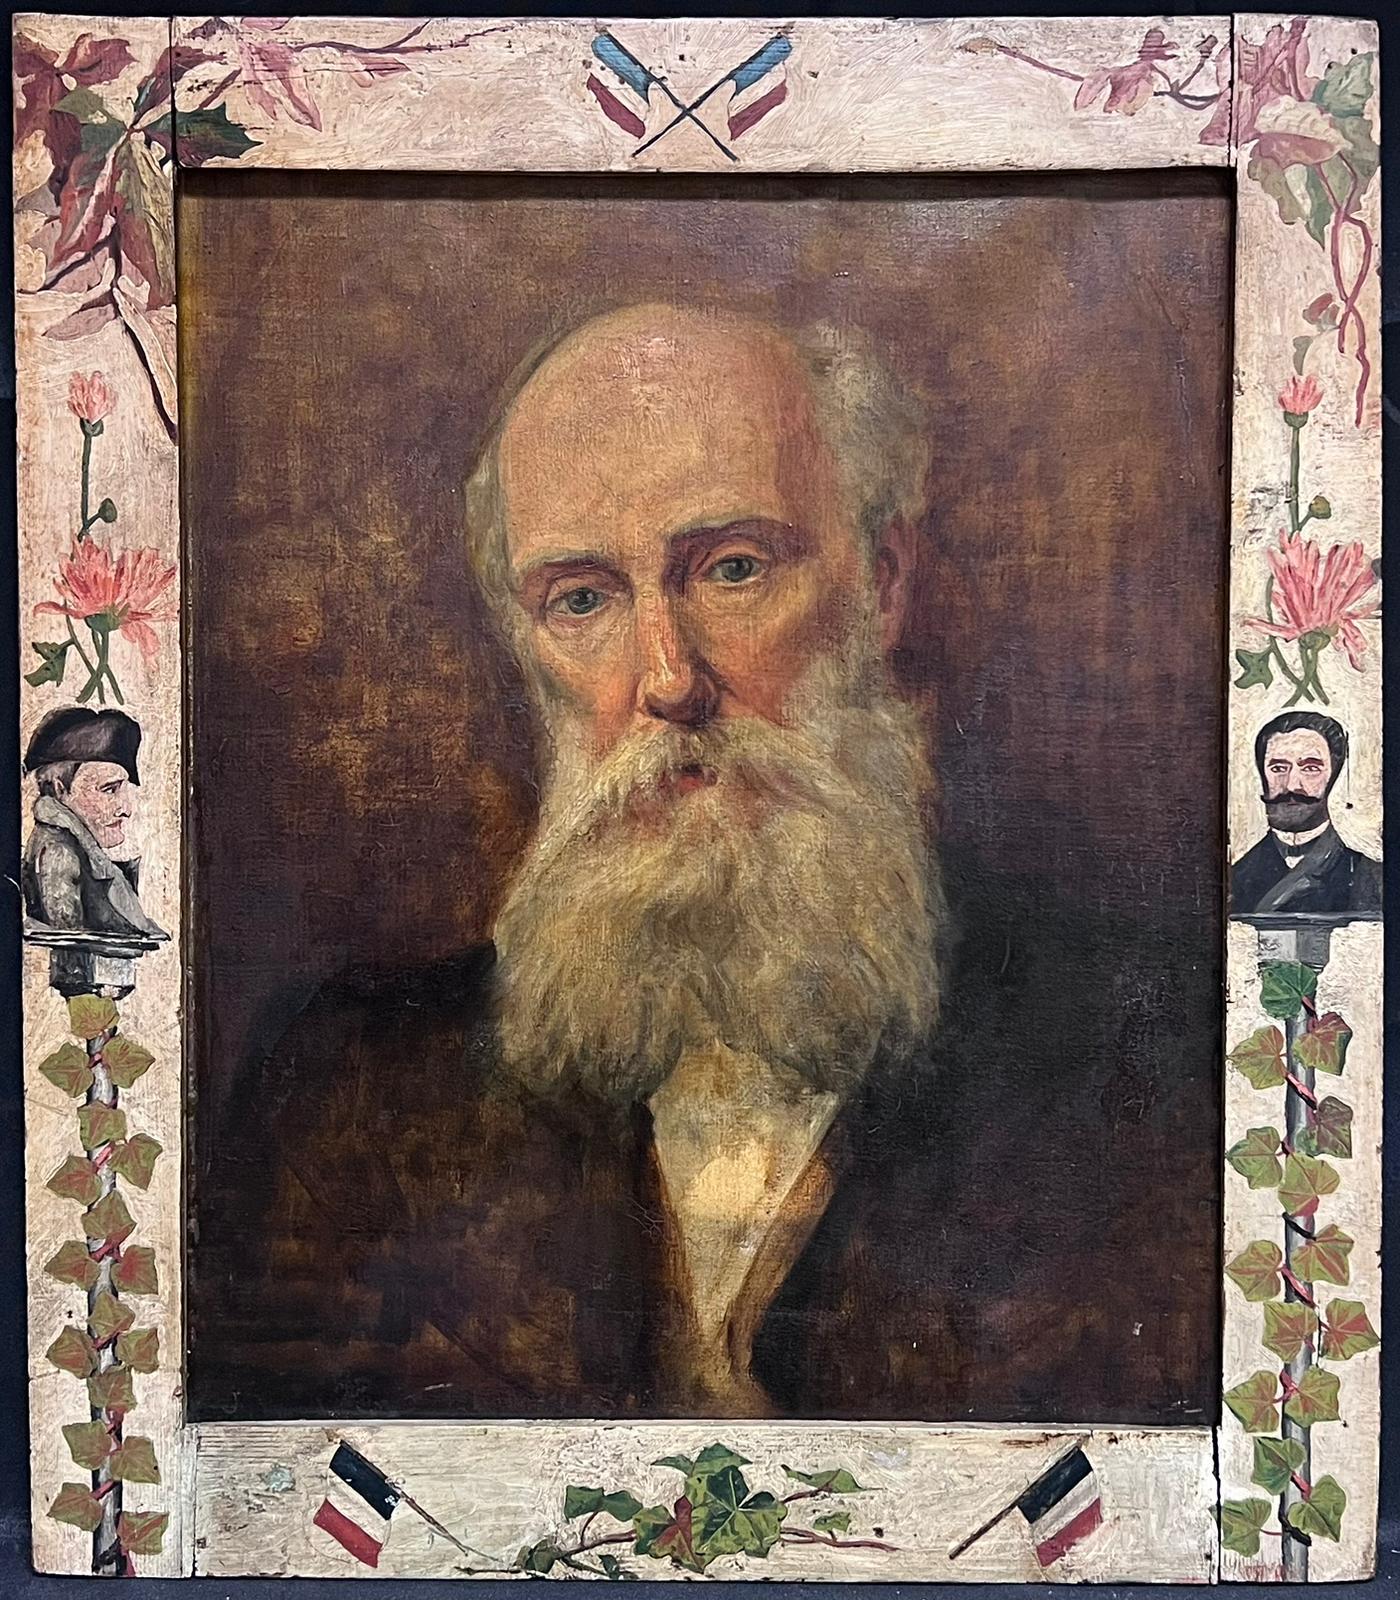 British c. 1901 Figurative Painting – Feines impressionistisches Ölgemälde, Porträt eines bearden Mannes, erstaunlicher Rahmen, d. 1901